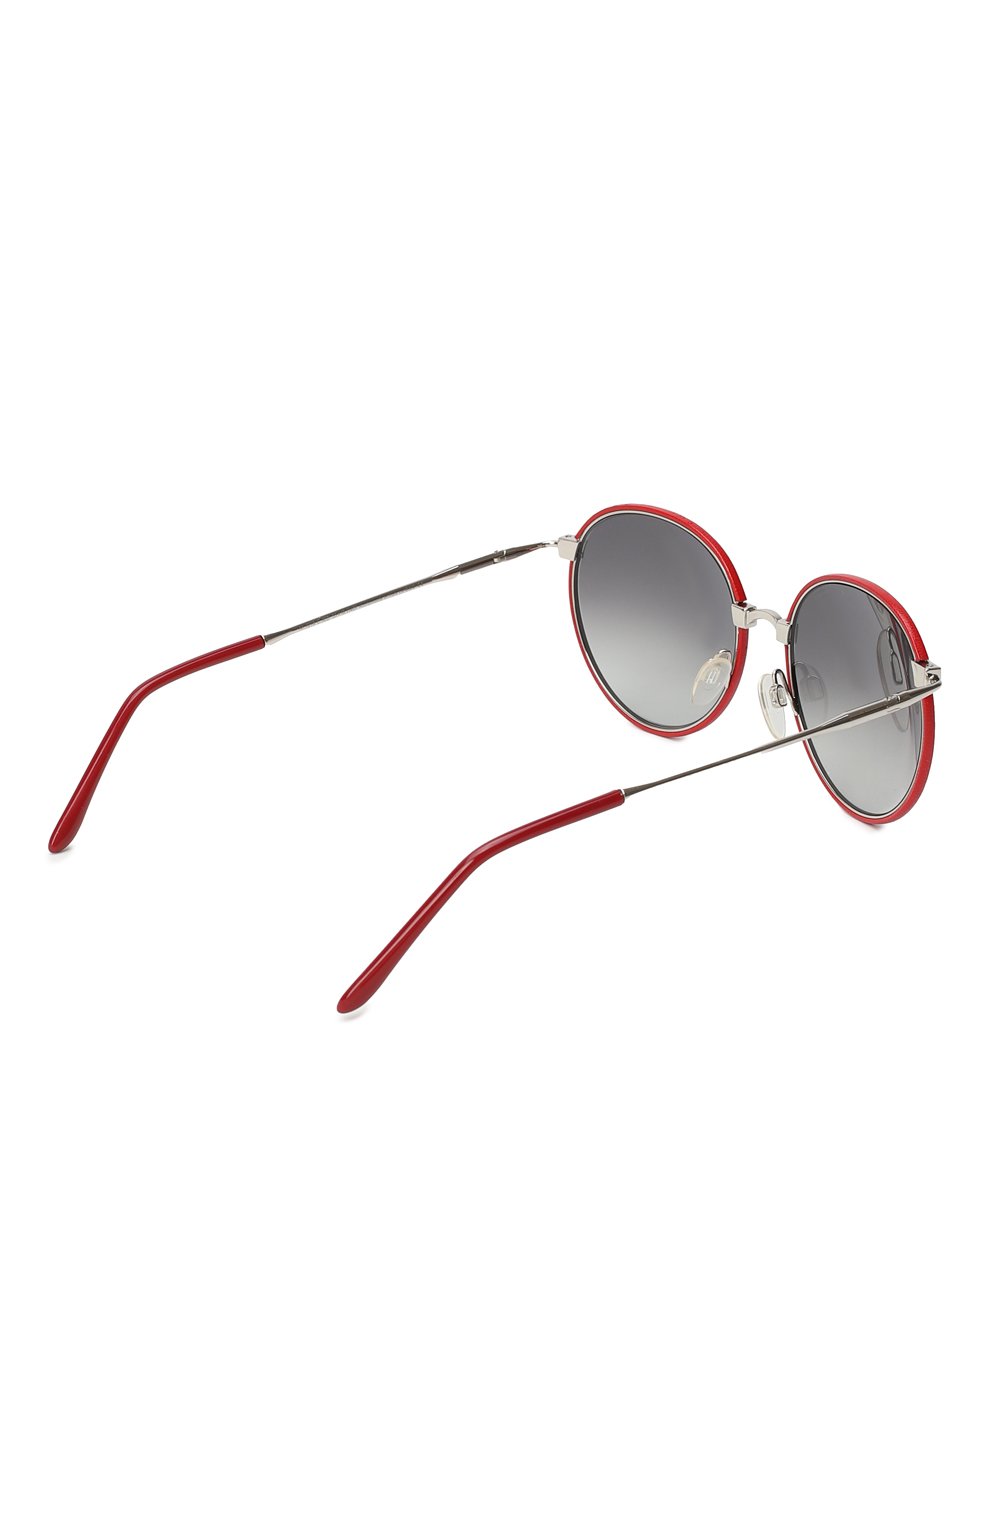 Солнцезащитные очки | Cutler and Gross | Красный - 3